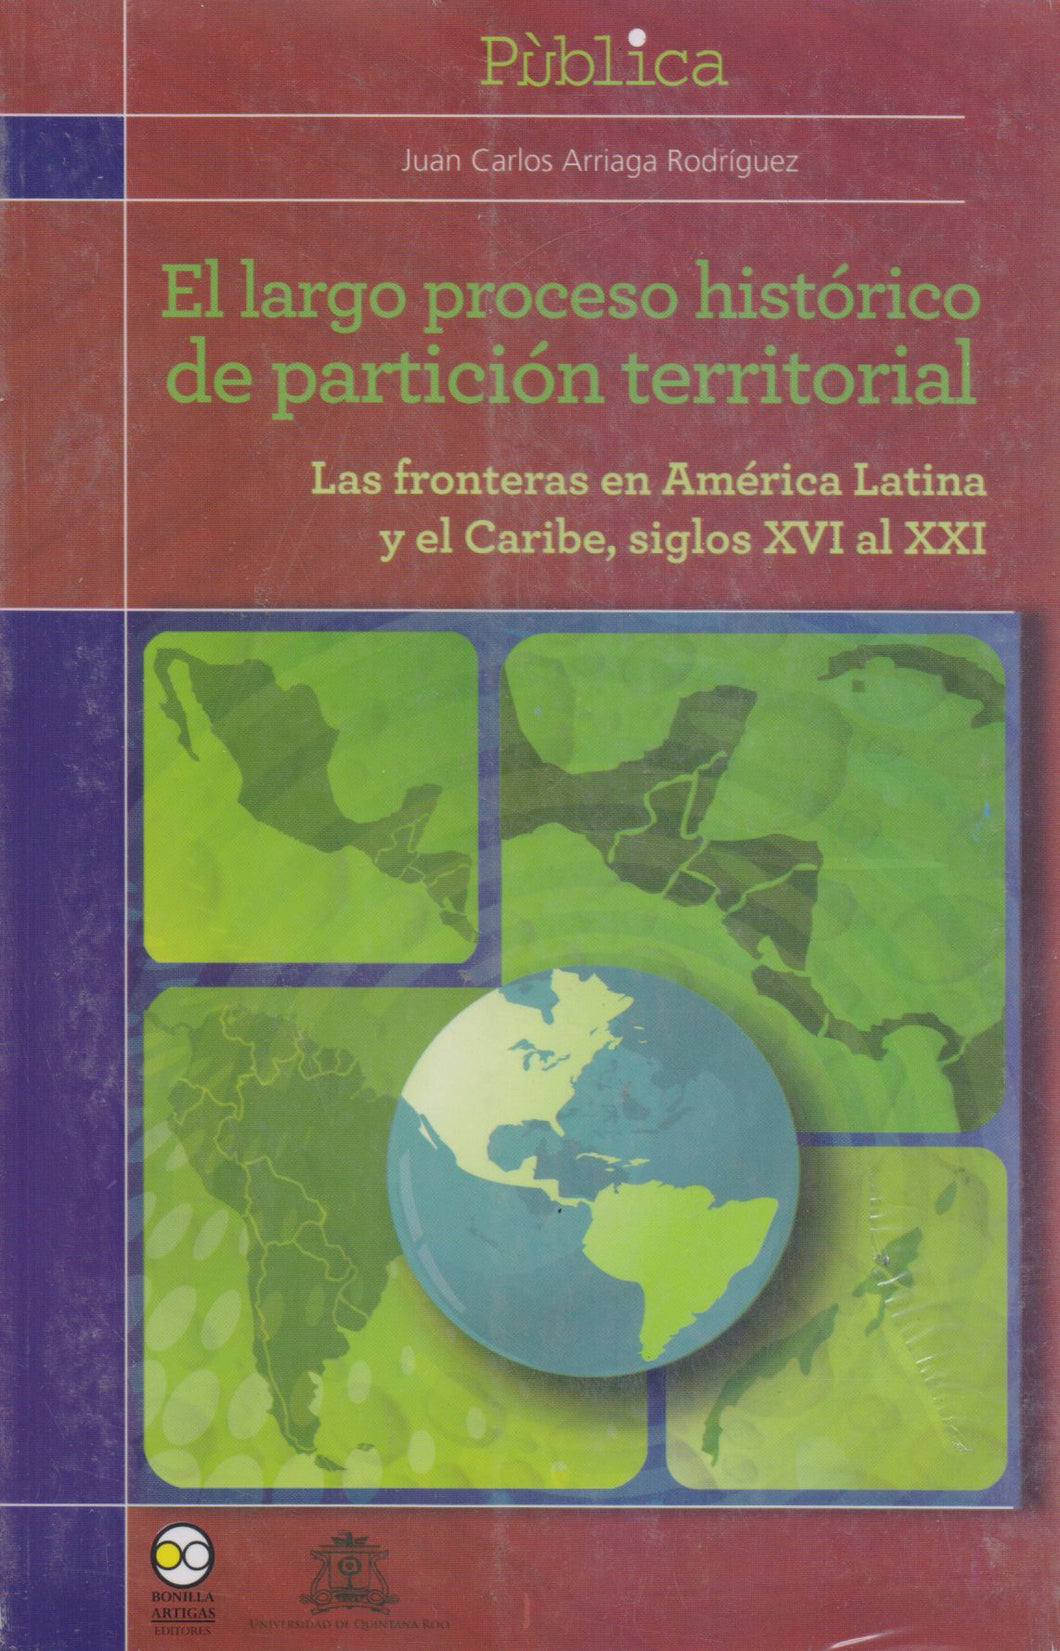 El largo proceso histórico de partición territorial - Arriaga Rodríguez, Juan Carlos